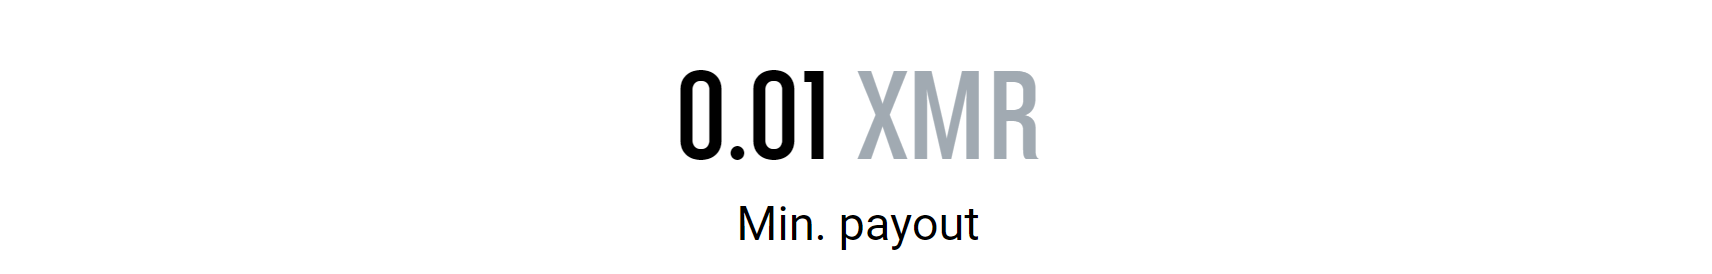 xmr_min_payout